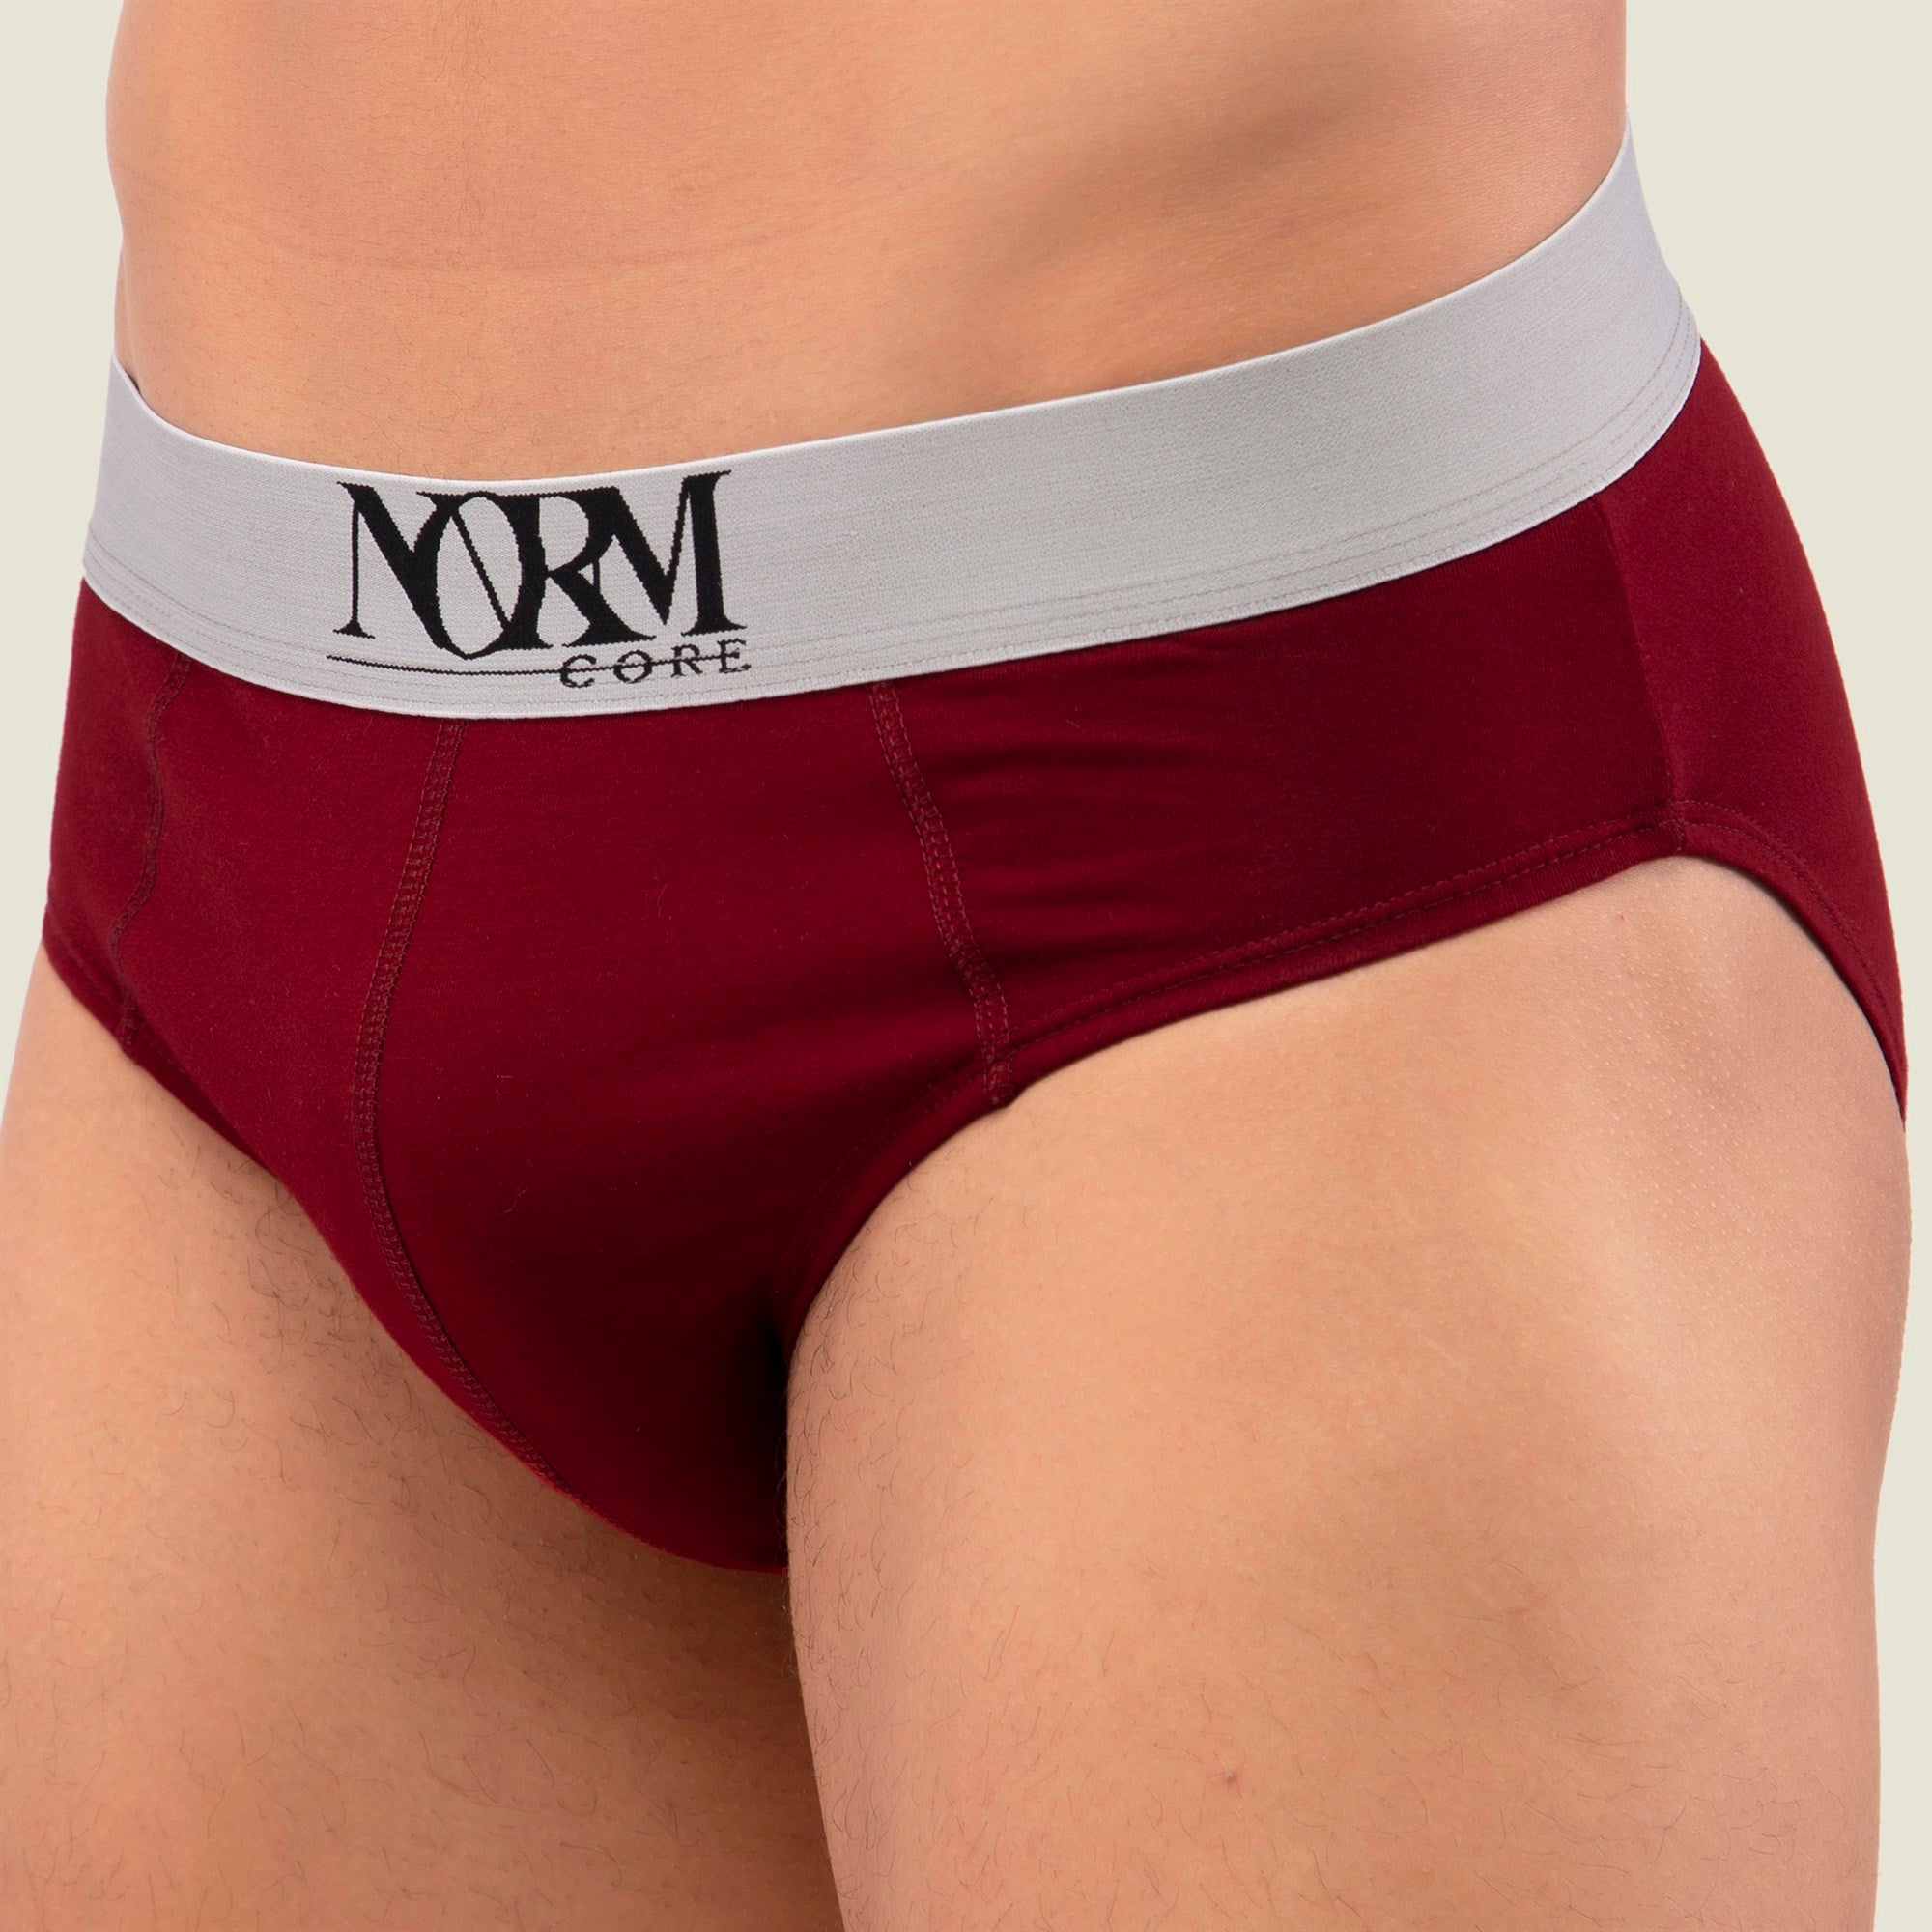 Normcore Cotton Innerwear - Maroon Brief with Silver Waistband Underwear